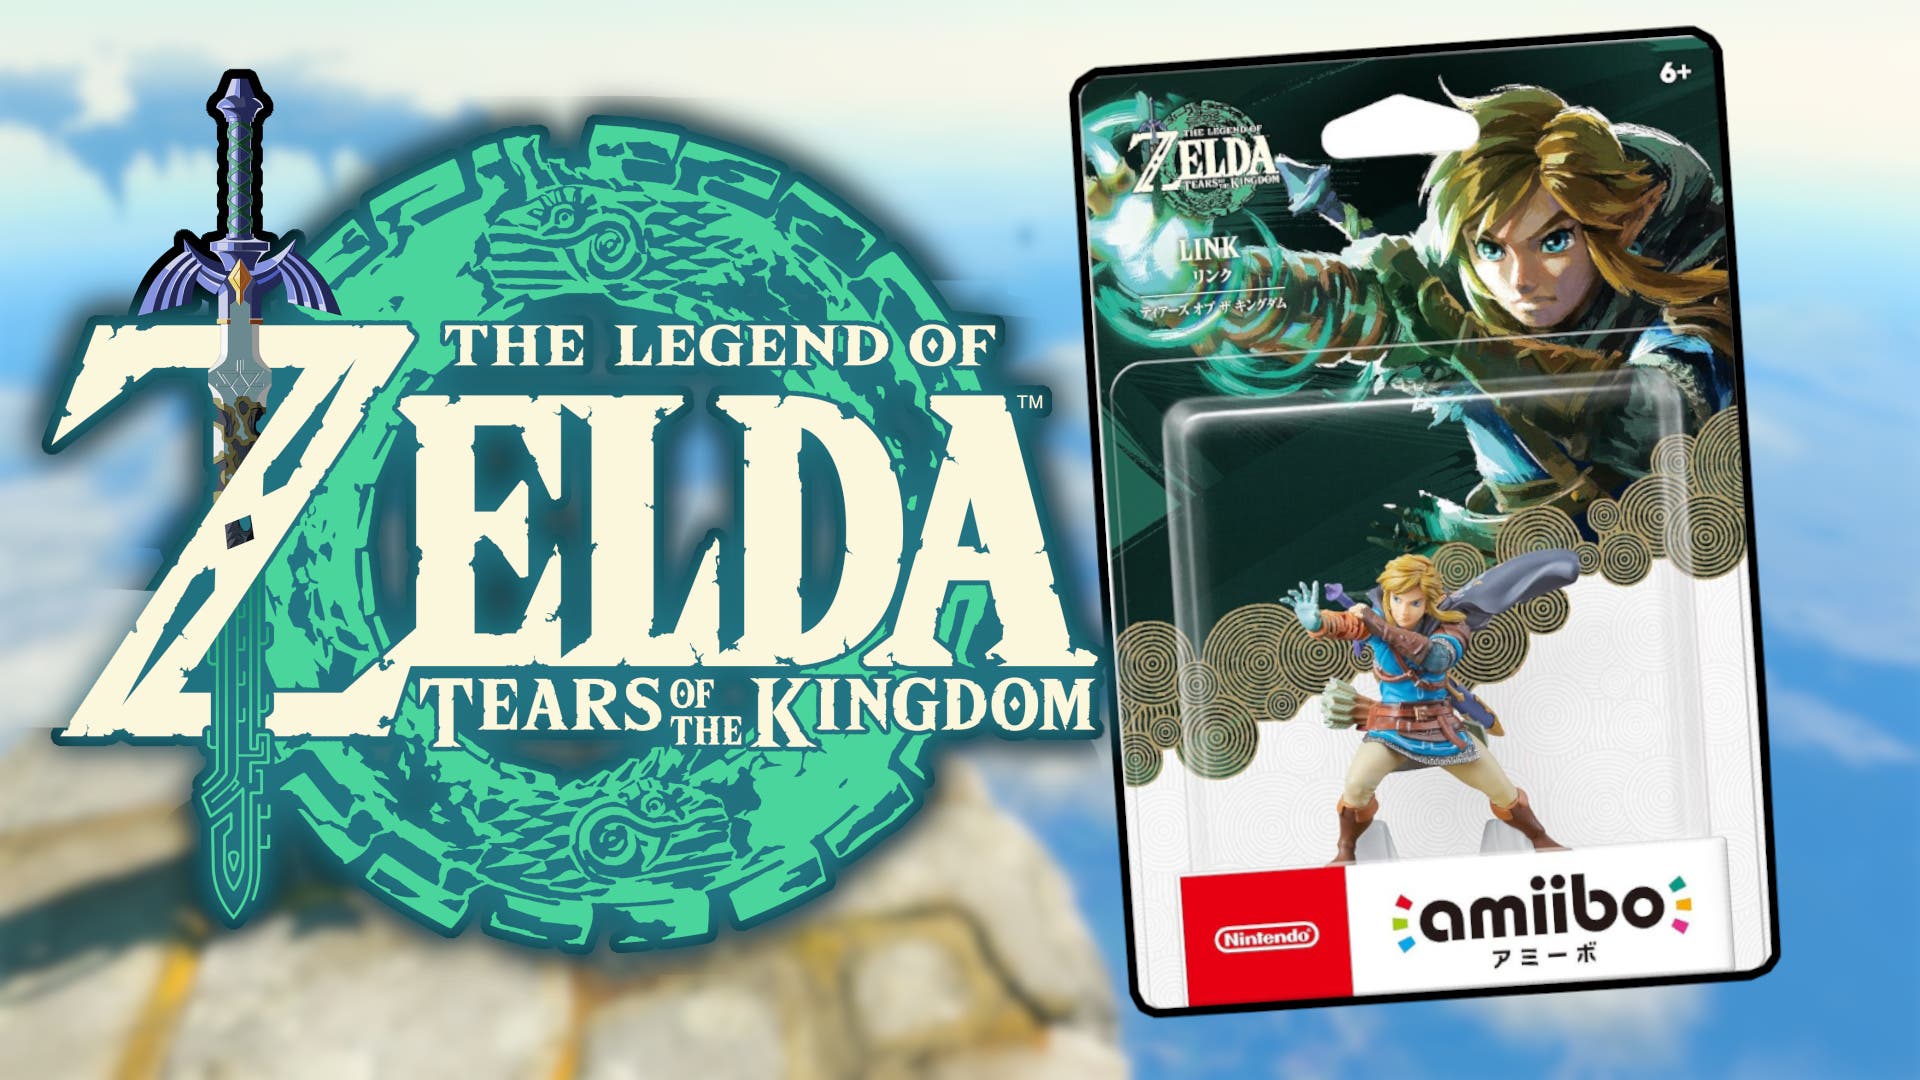 Zelda: Tears of the Kingdom anuncia un increíble amiibo exclusivo